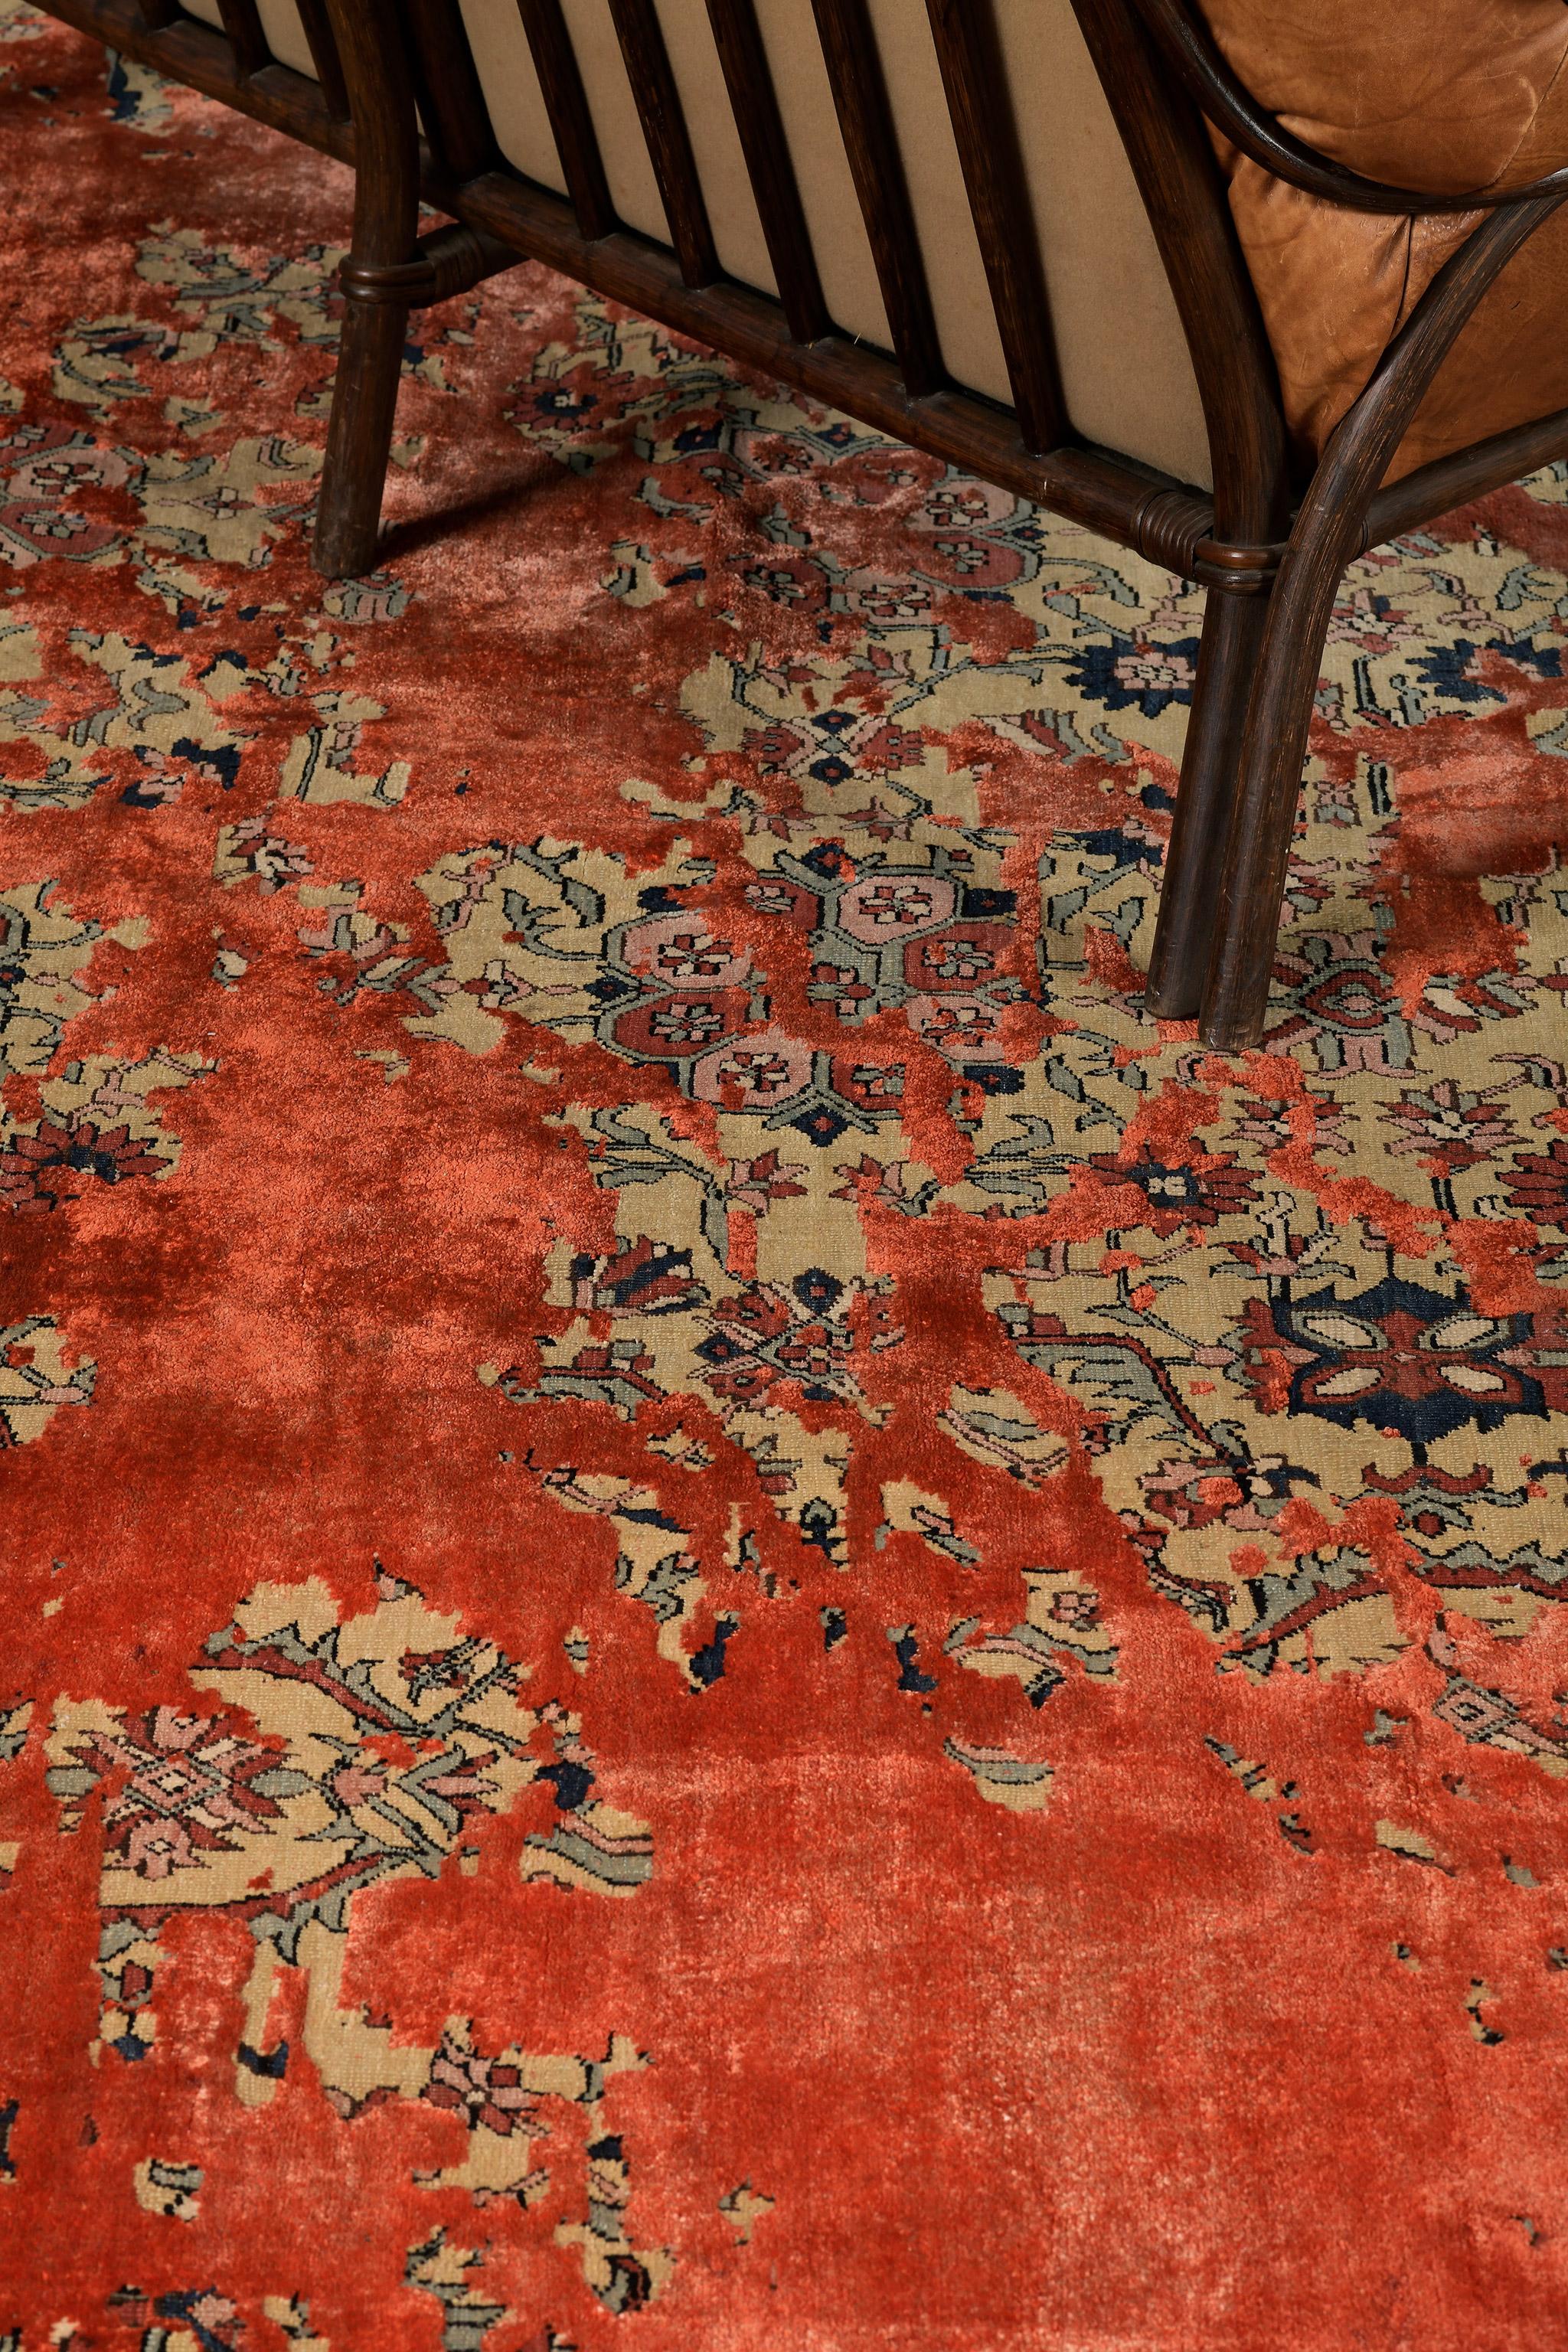 Ein bezaubernder Teppich mit einem Übergangsdesign, das die leuchtenden Rot- und Orangetöne und die Zwickel aus schwarzen und indigoblauen Akzenten ergänzt. Erkennbare florale Verzierungen aus Gold sind wunderschön dargestellt, was den Teppich noch